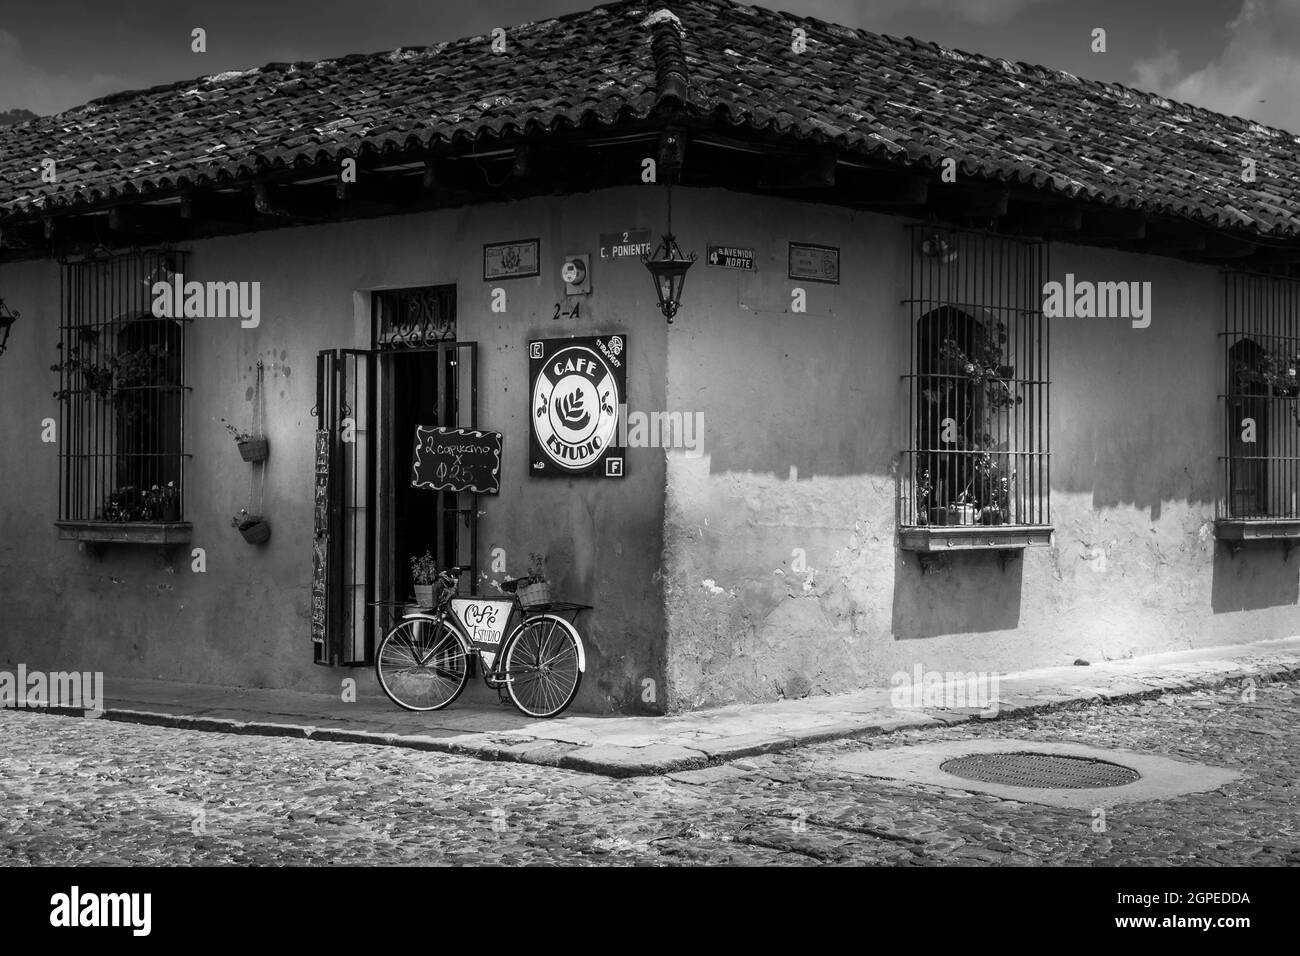 Immagine in bianco e nero del negozio d'angolo con una bicicletta solista contro il muro a Cartagena Colombia Sud America. Nessuna gente. Foto Stock